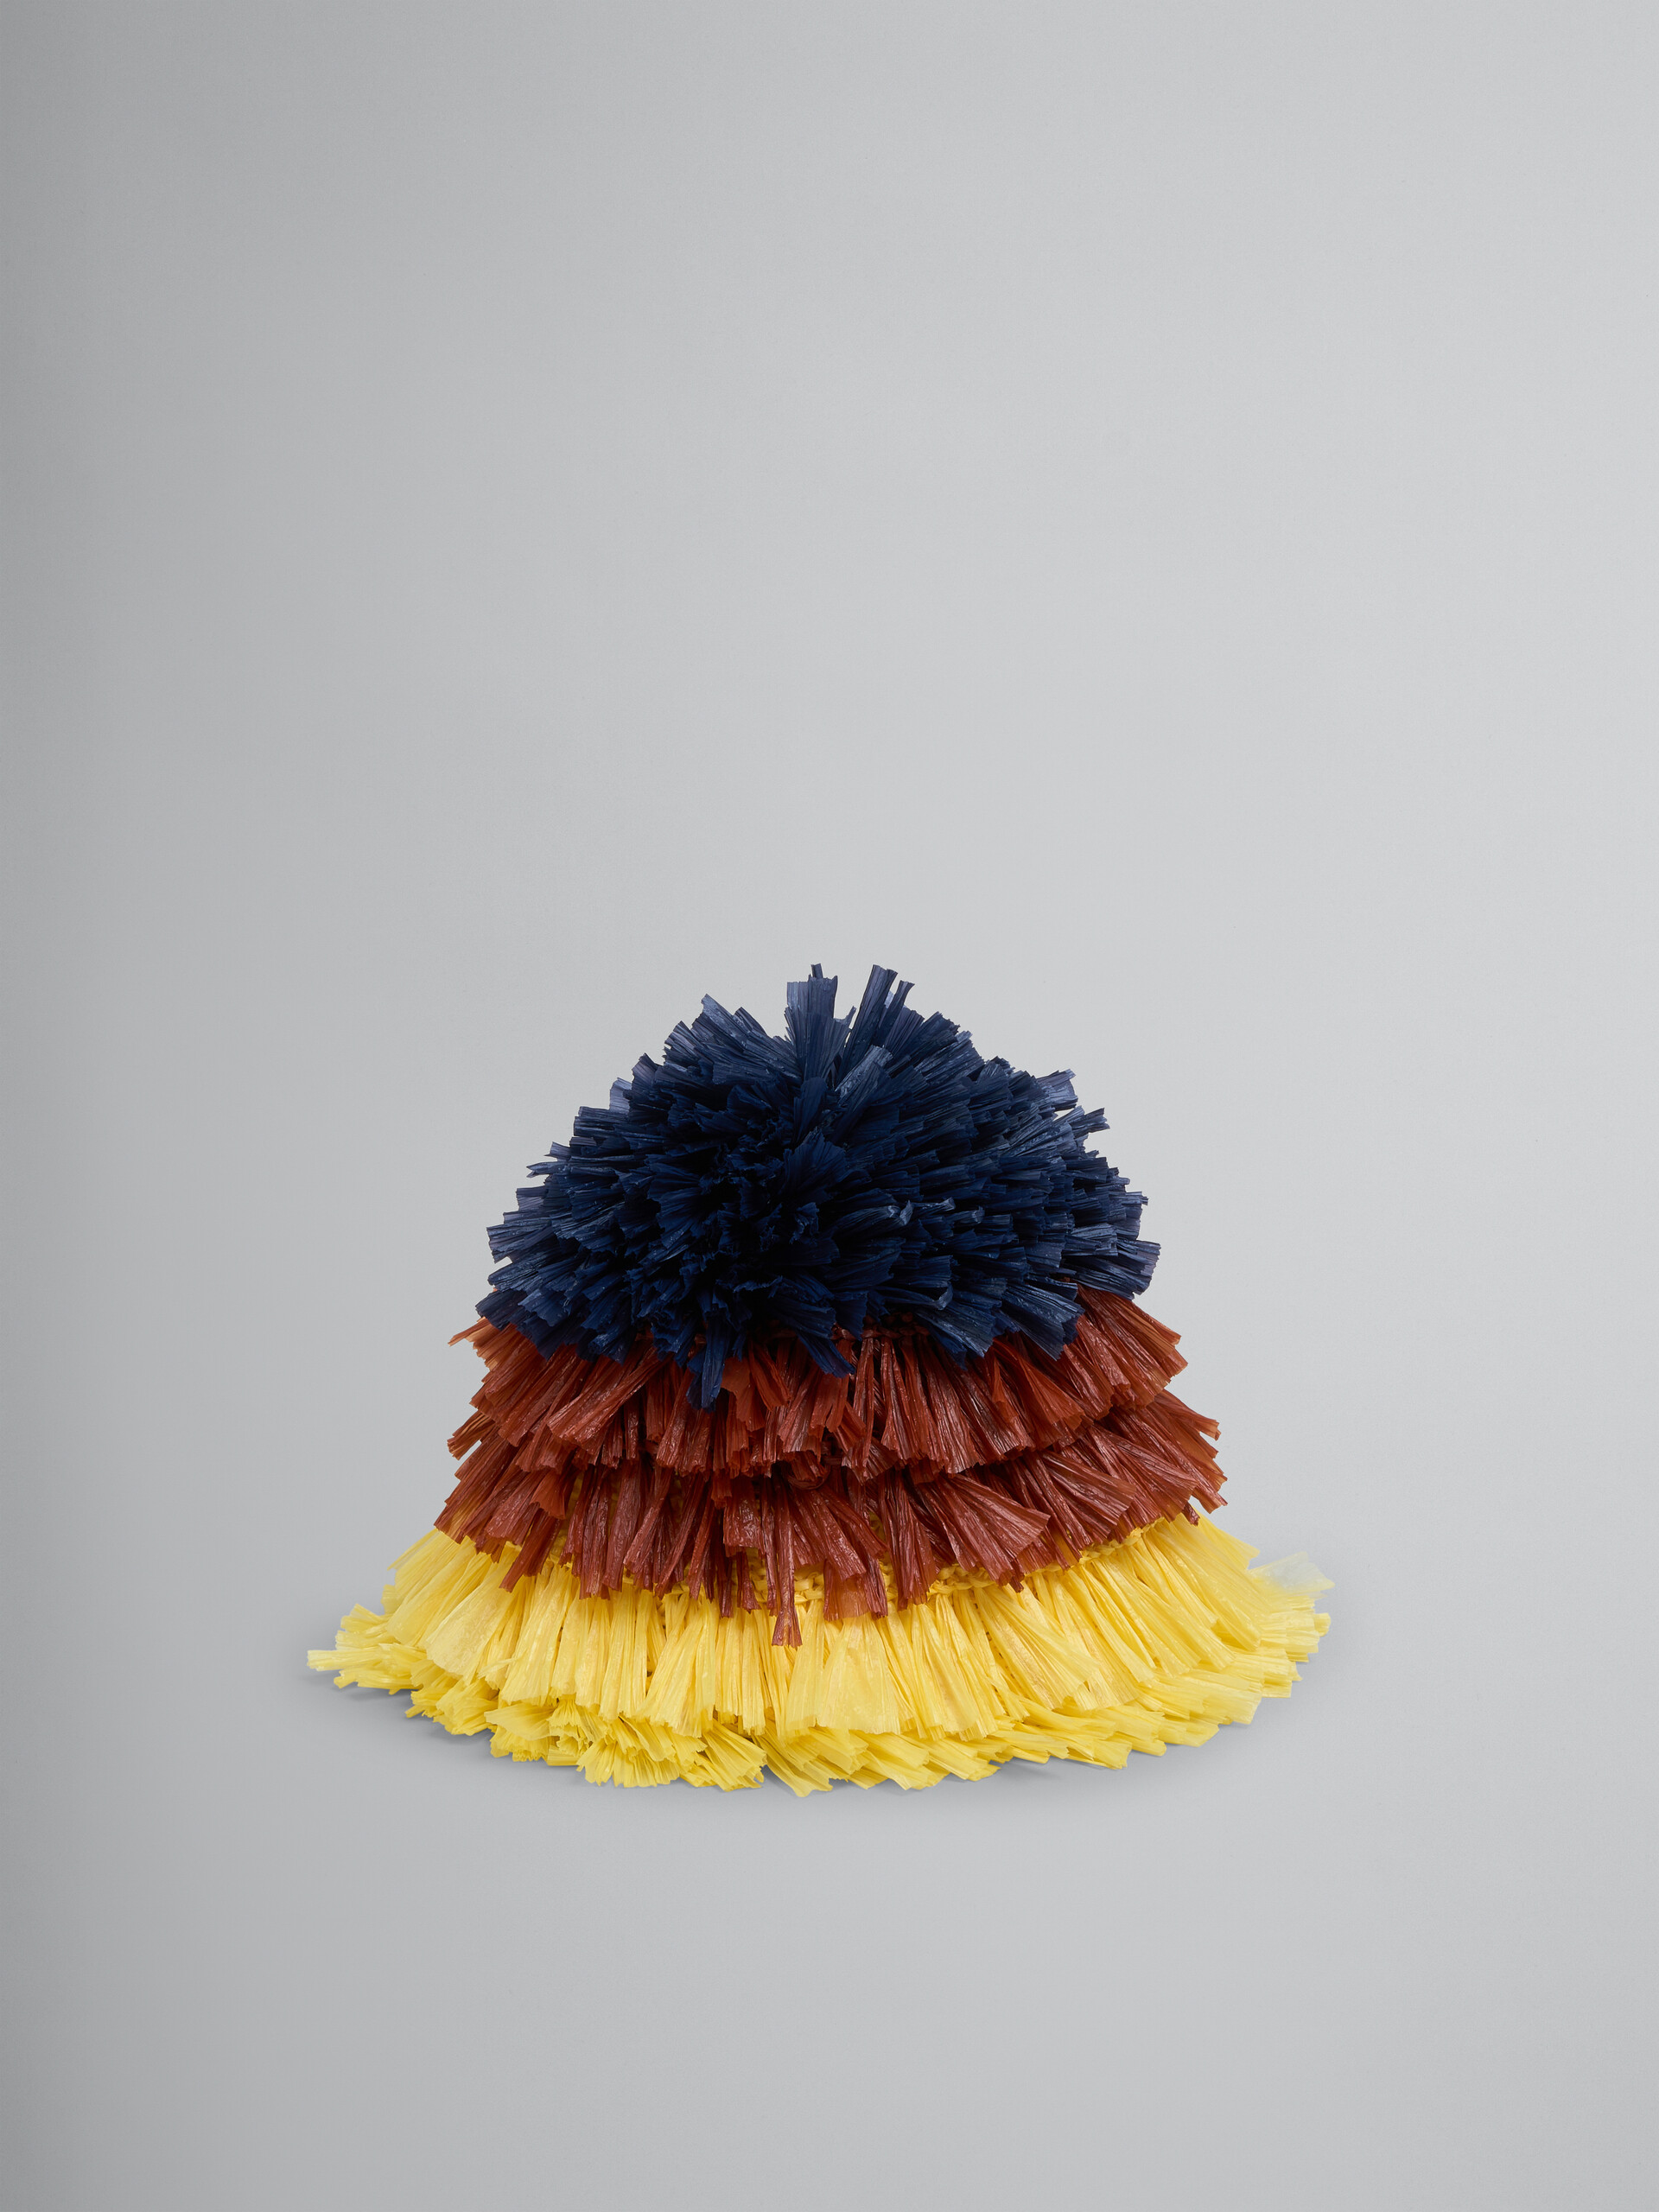 Cappello bucket in tessuto effetto rafia blu, marrone e giallo - Cappelli - Image 1